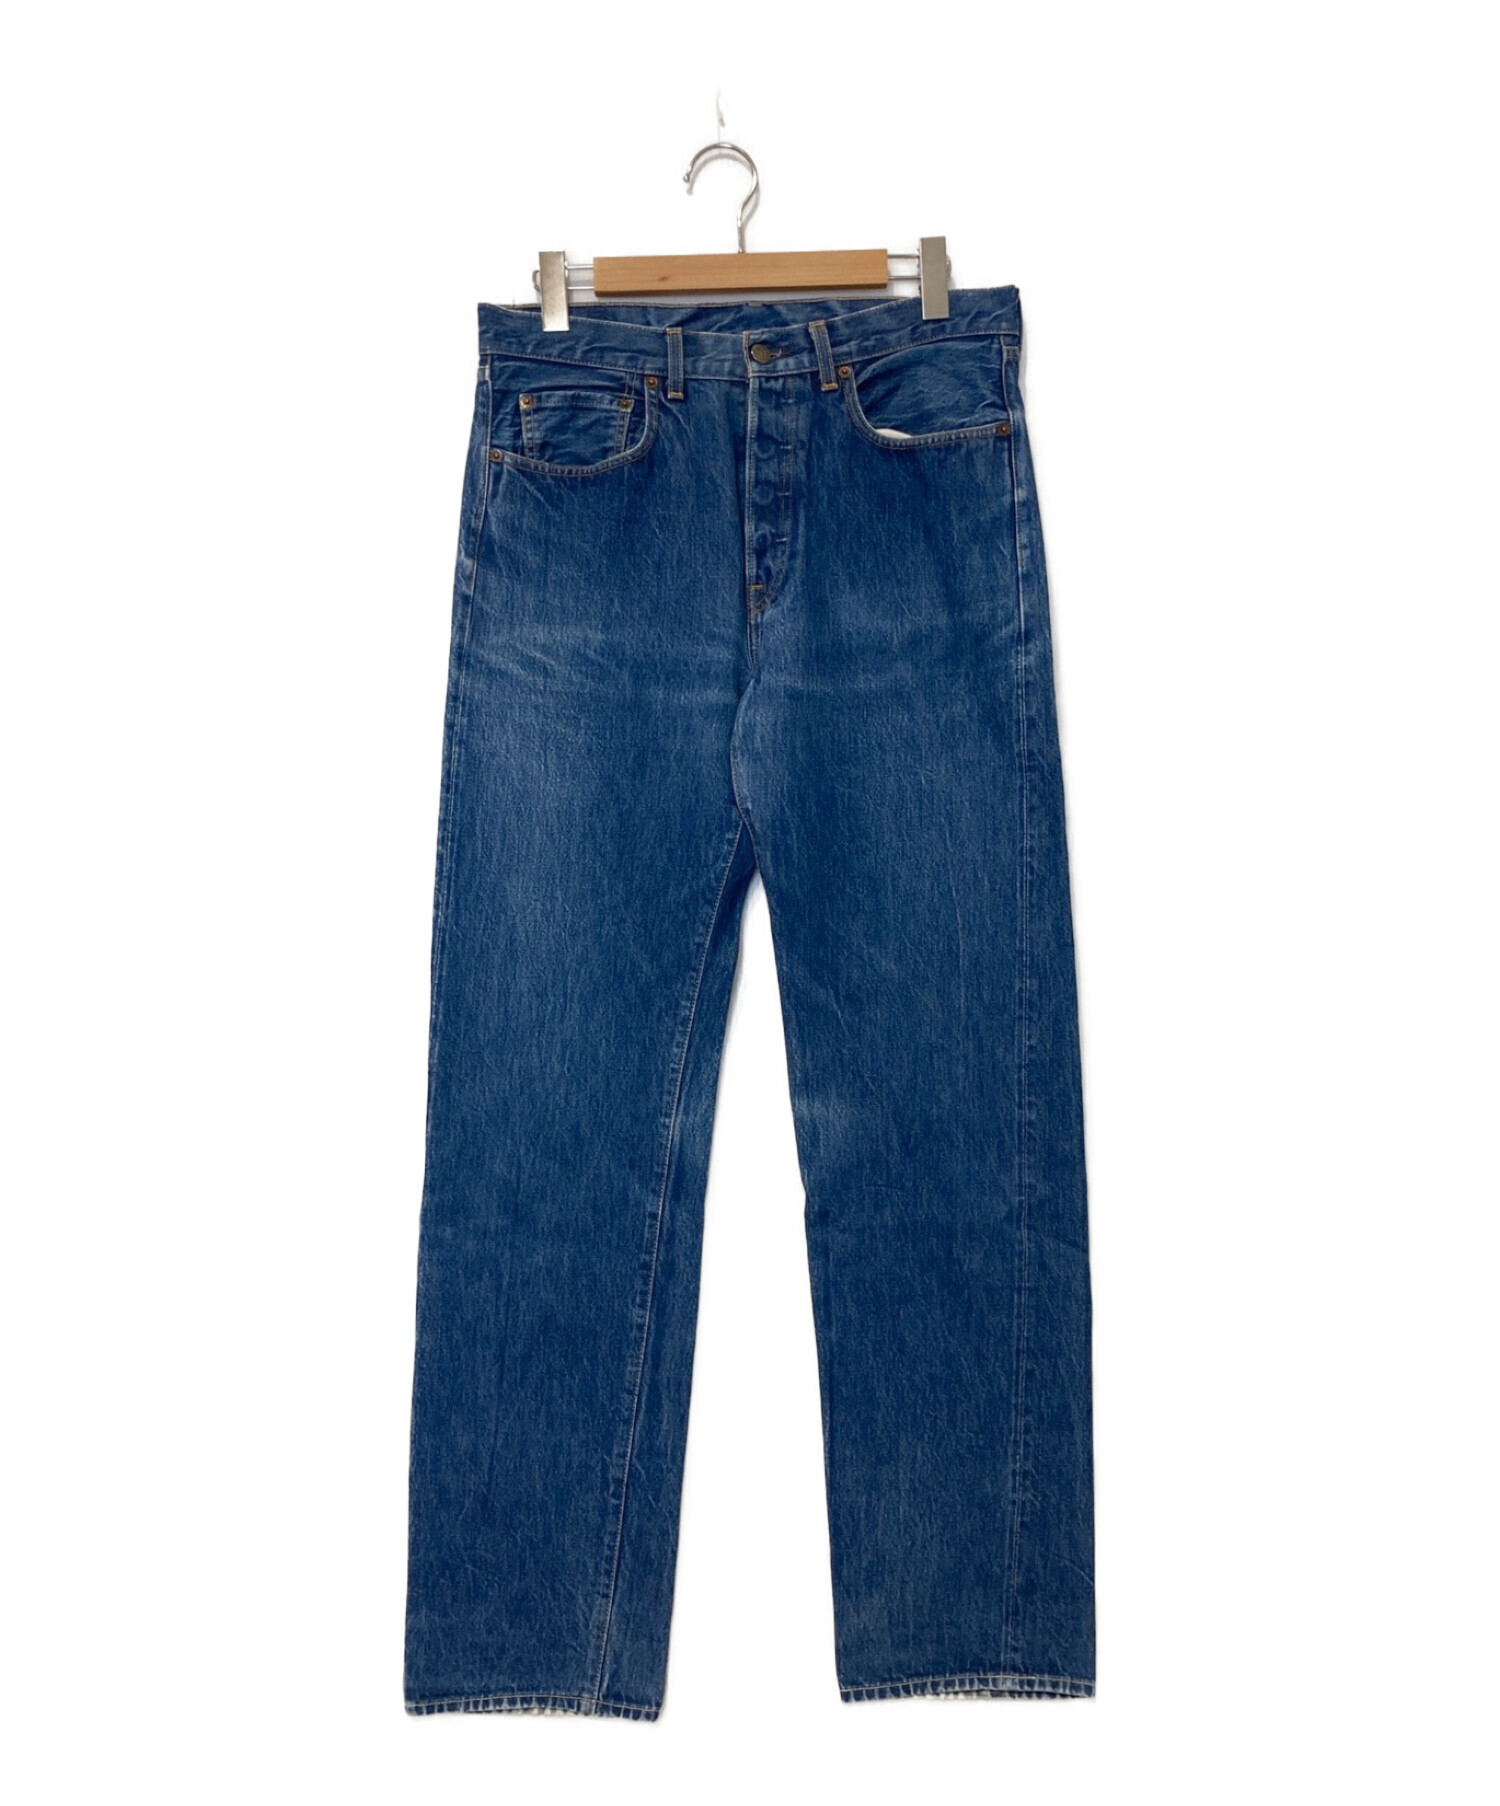 LEVI'S VINTAGE CLOTHING (リーバイスヴィンテージクロージング) 復刻501XXデニムパンツ ブルー サイズ:W34